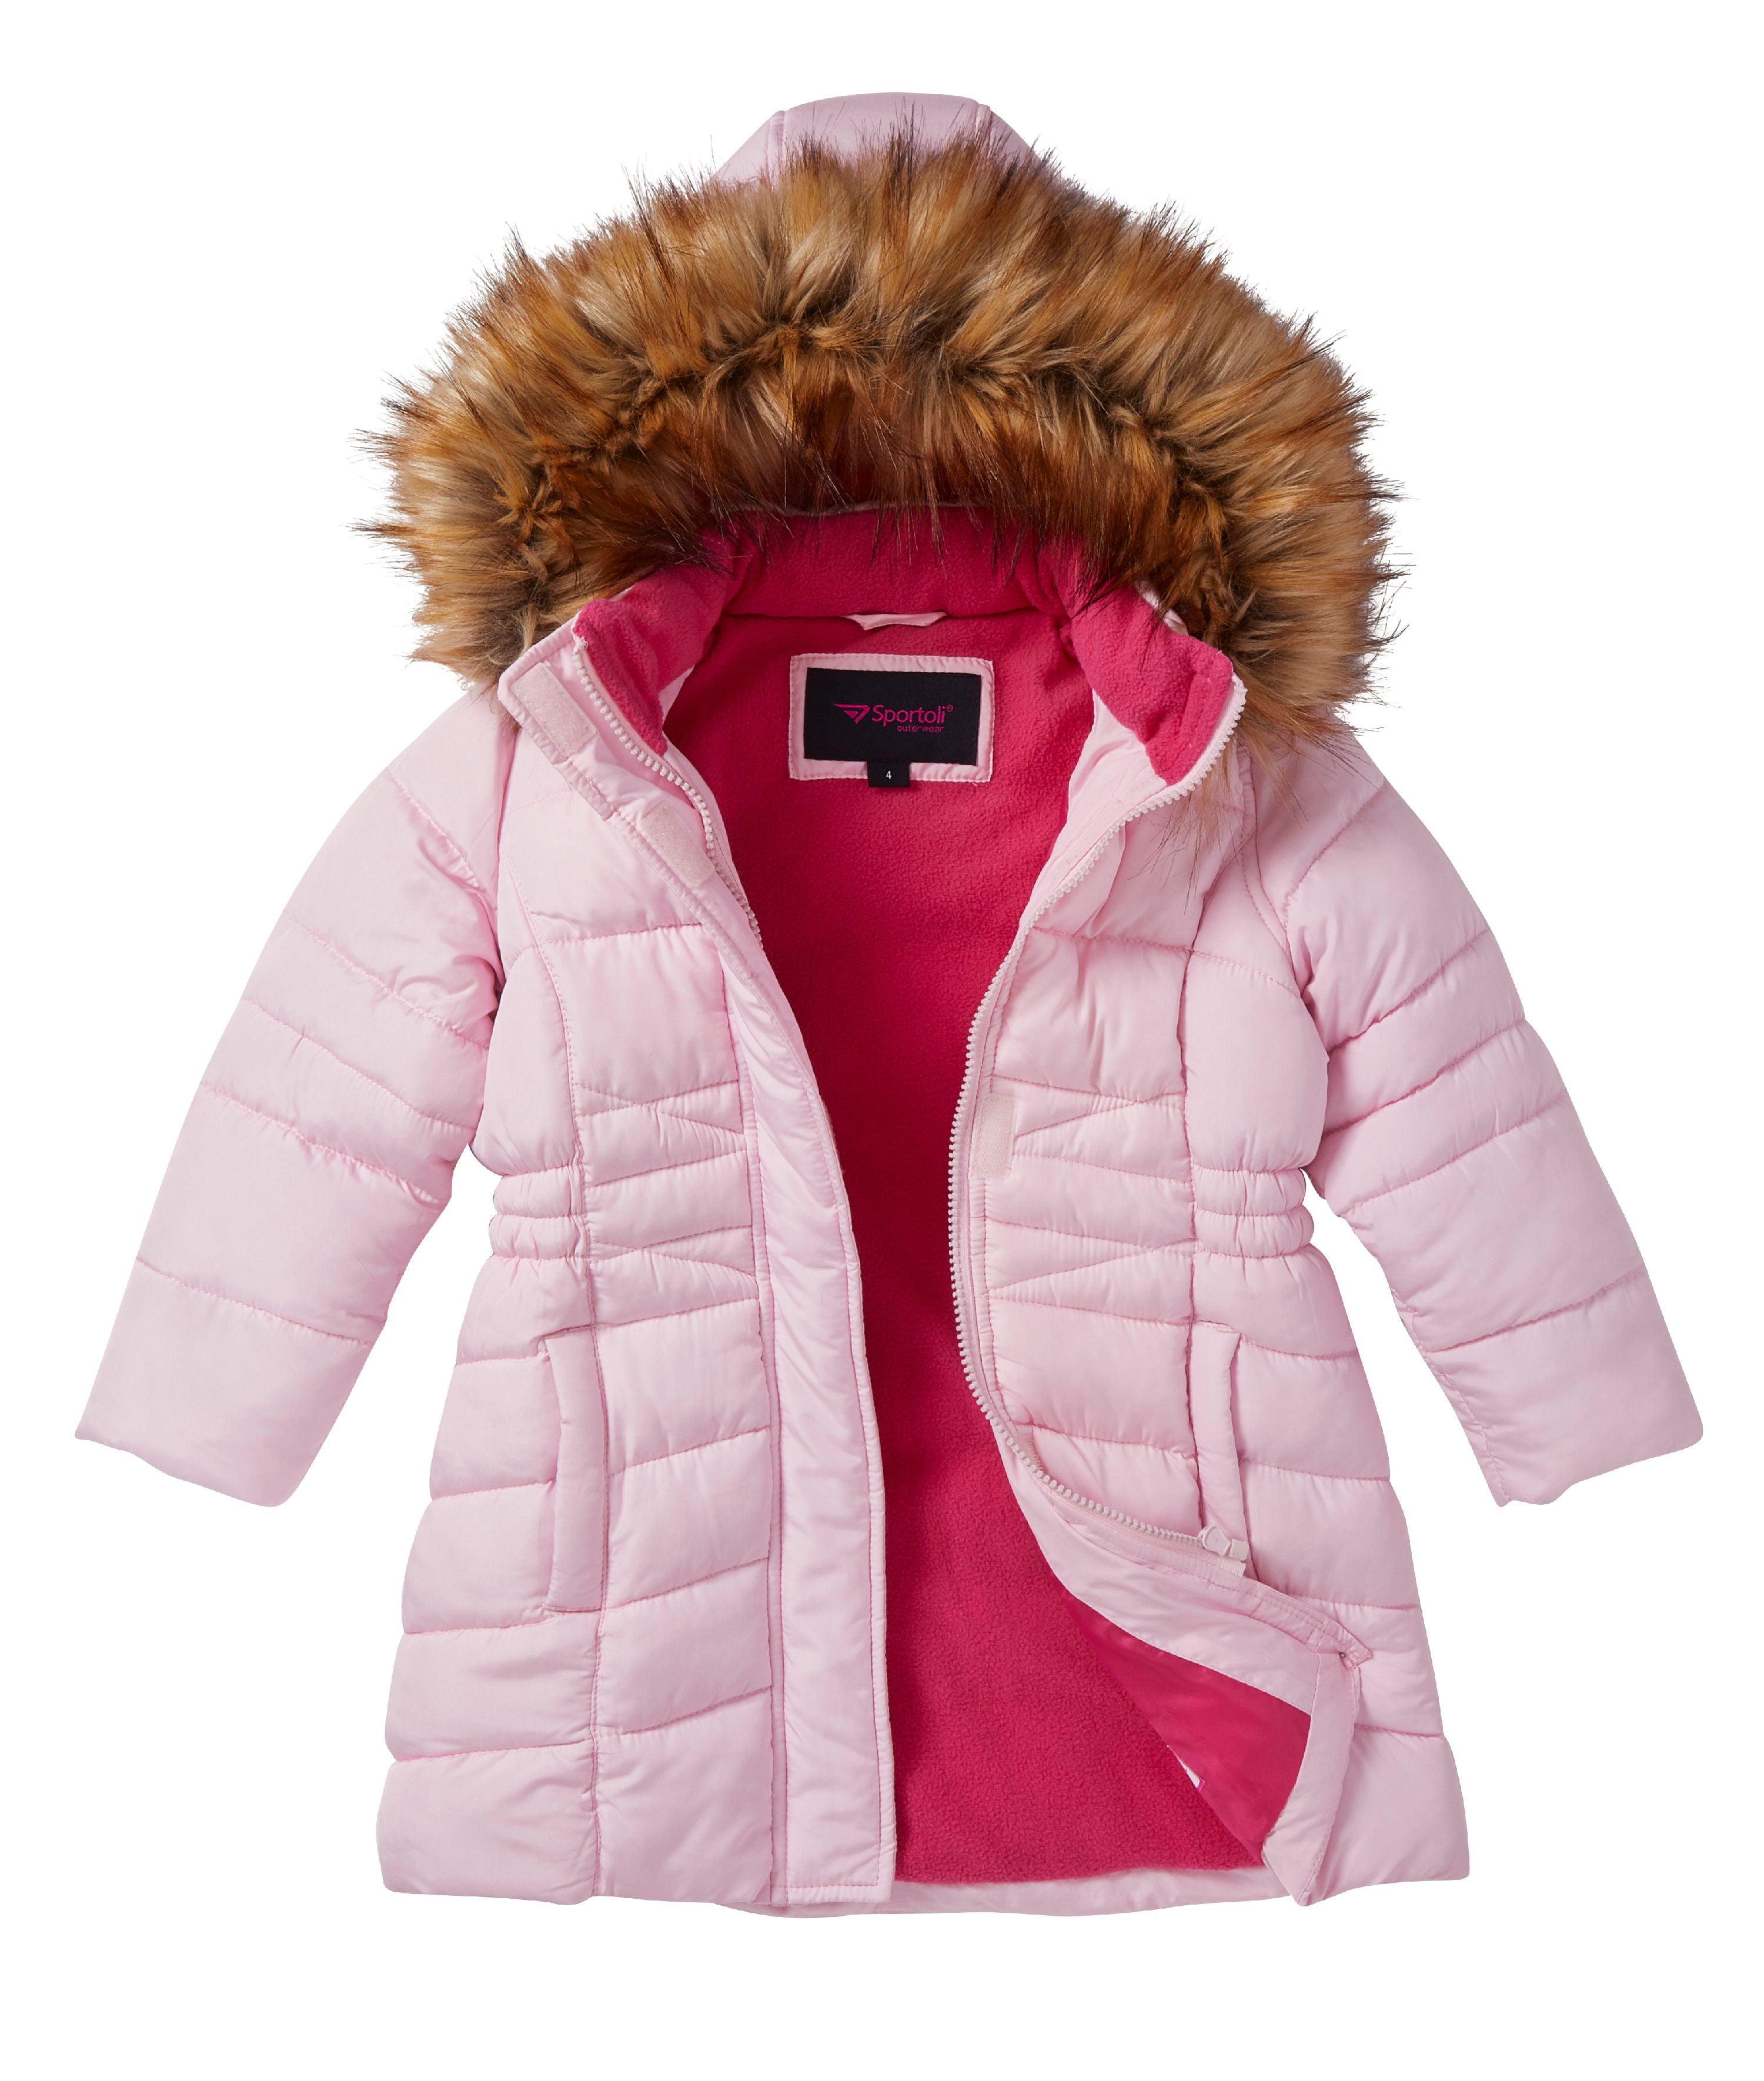 Girls Midlength Quilted Fleece Lined Winter Puffer Jacket Coat Zip-Off Fur Hood